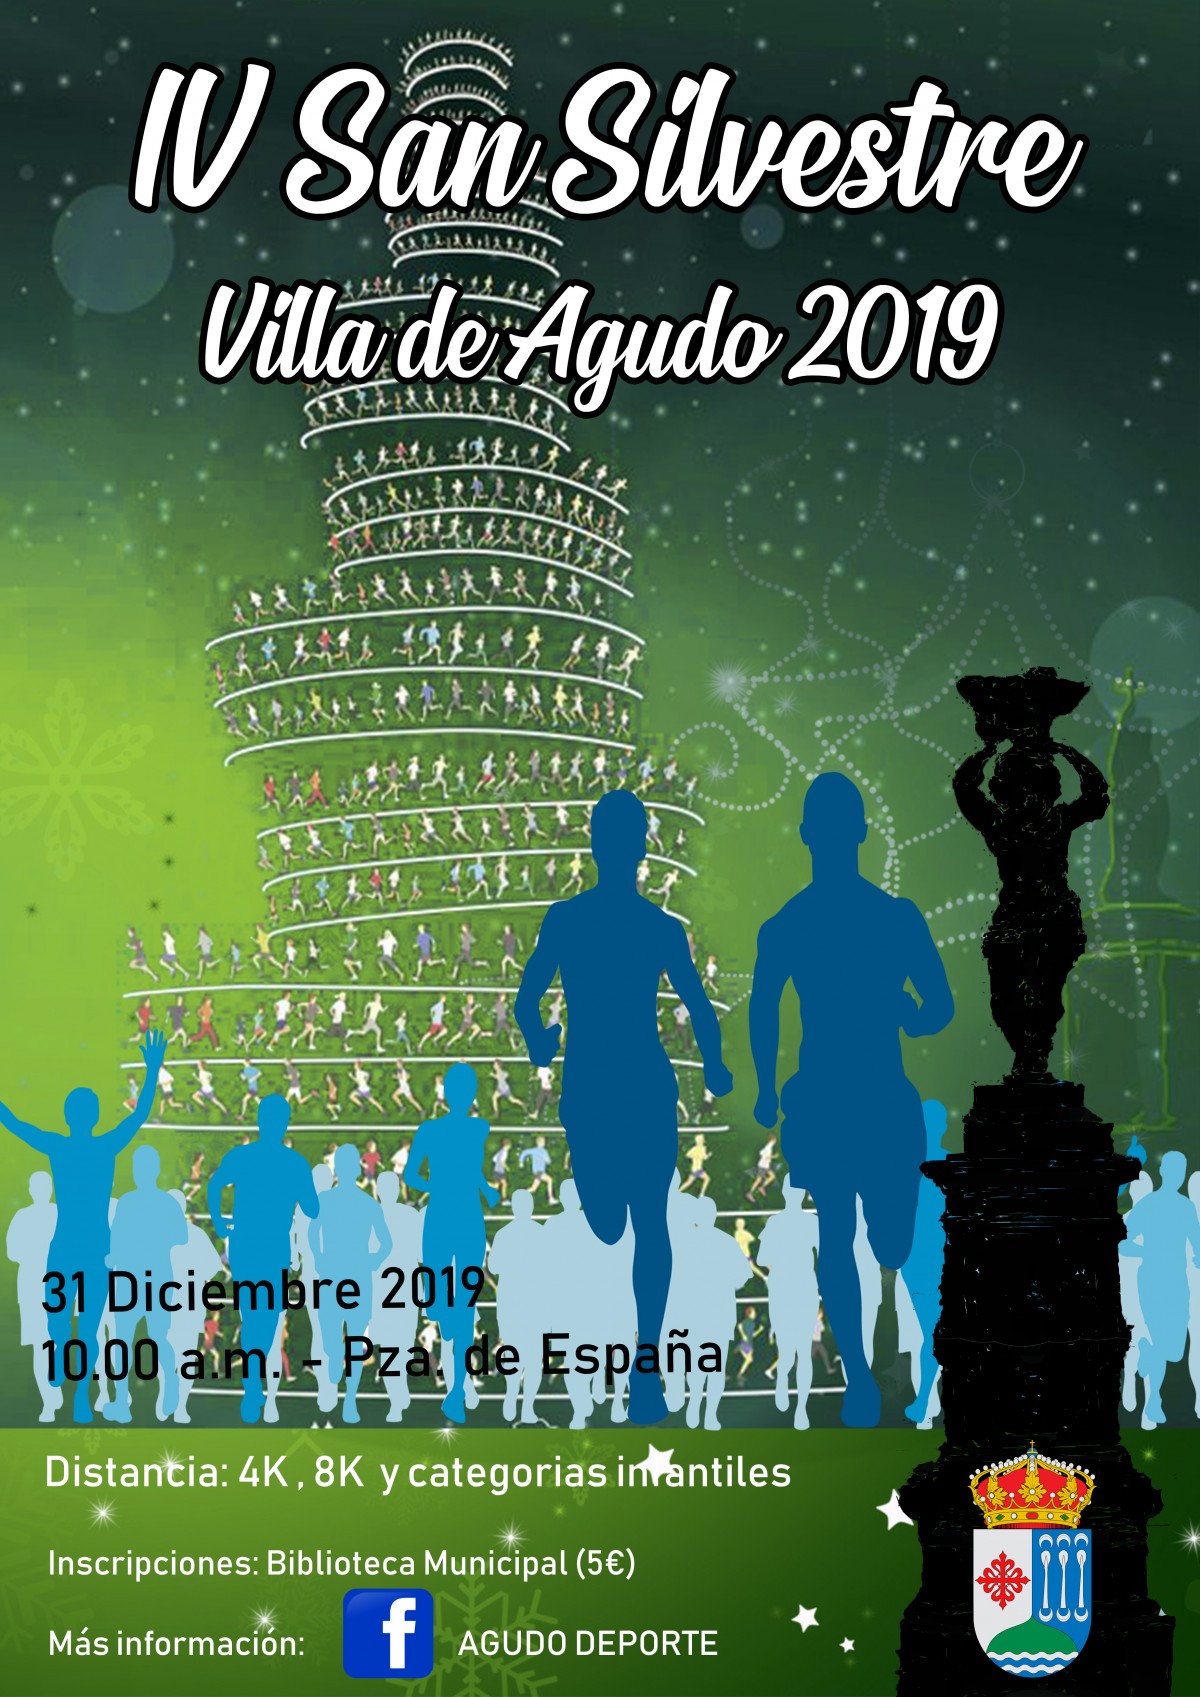 IV San Silvestre Villa de Agudo 2019